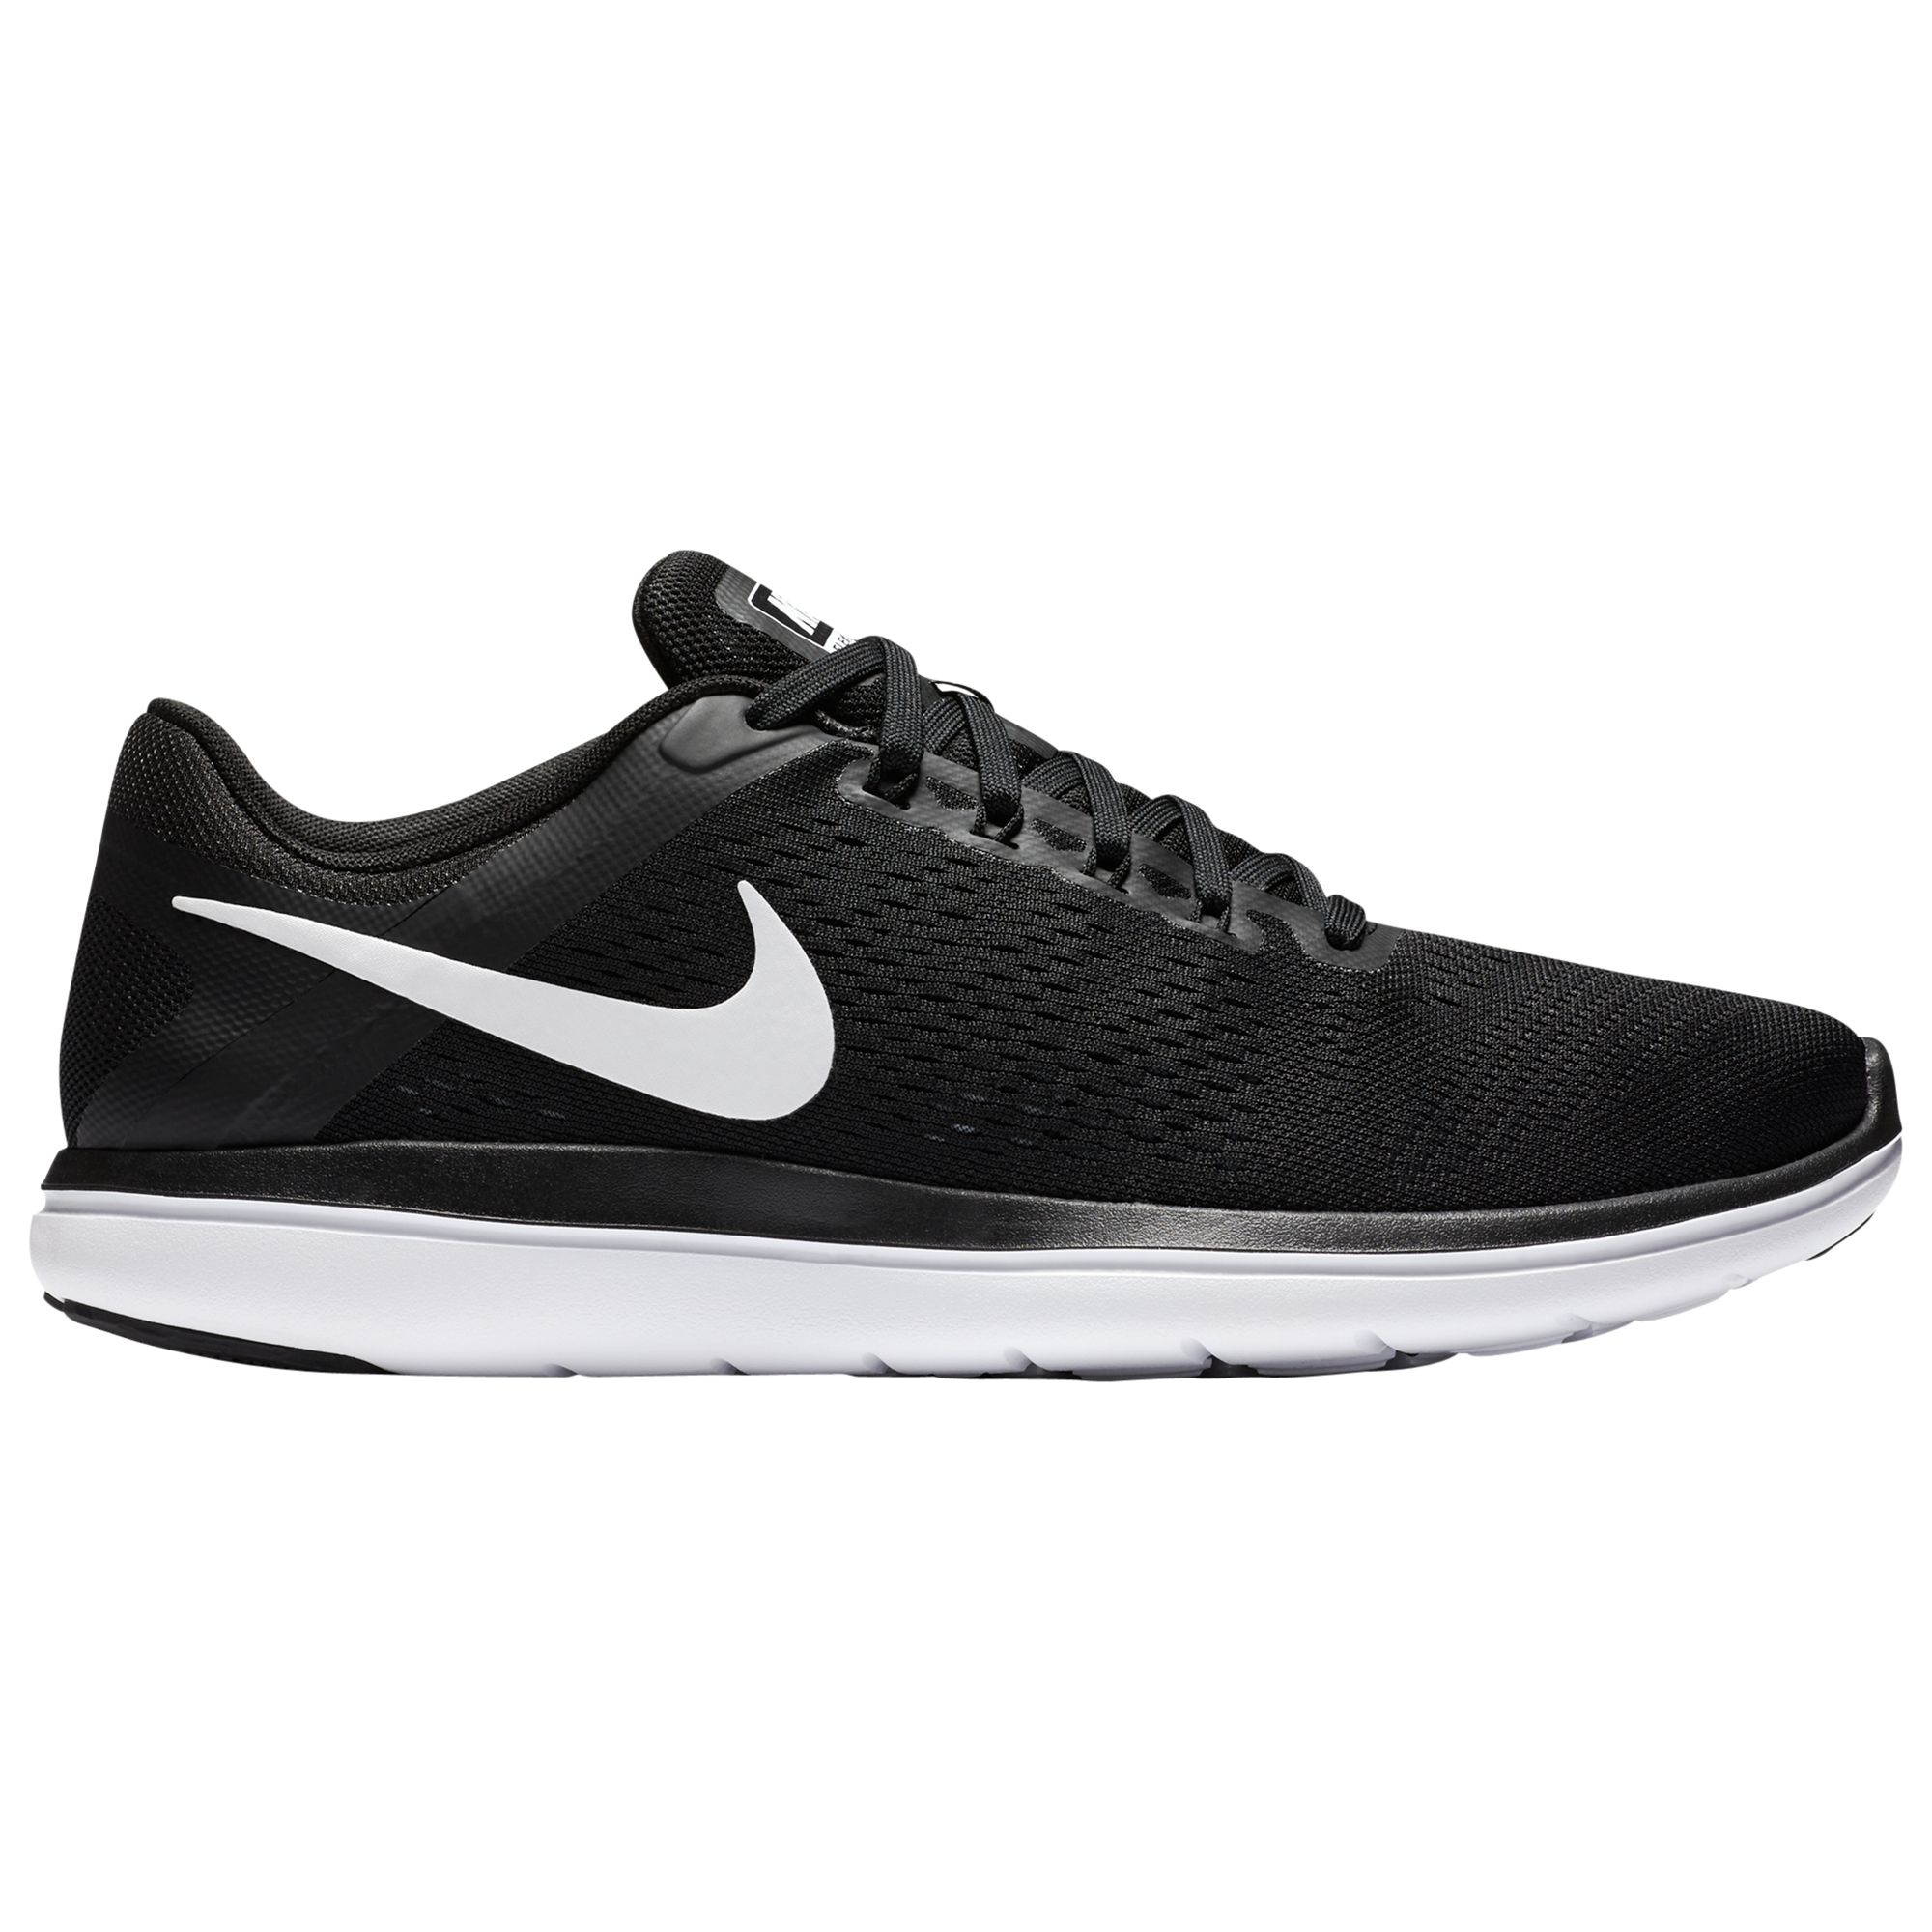 Nike Flex 2016 RN Men's Running Shoes, Black/White